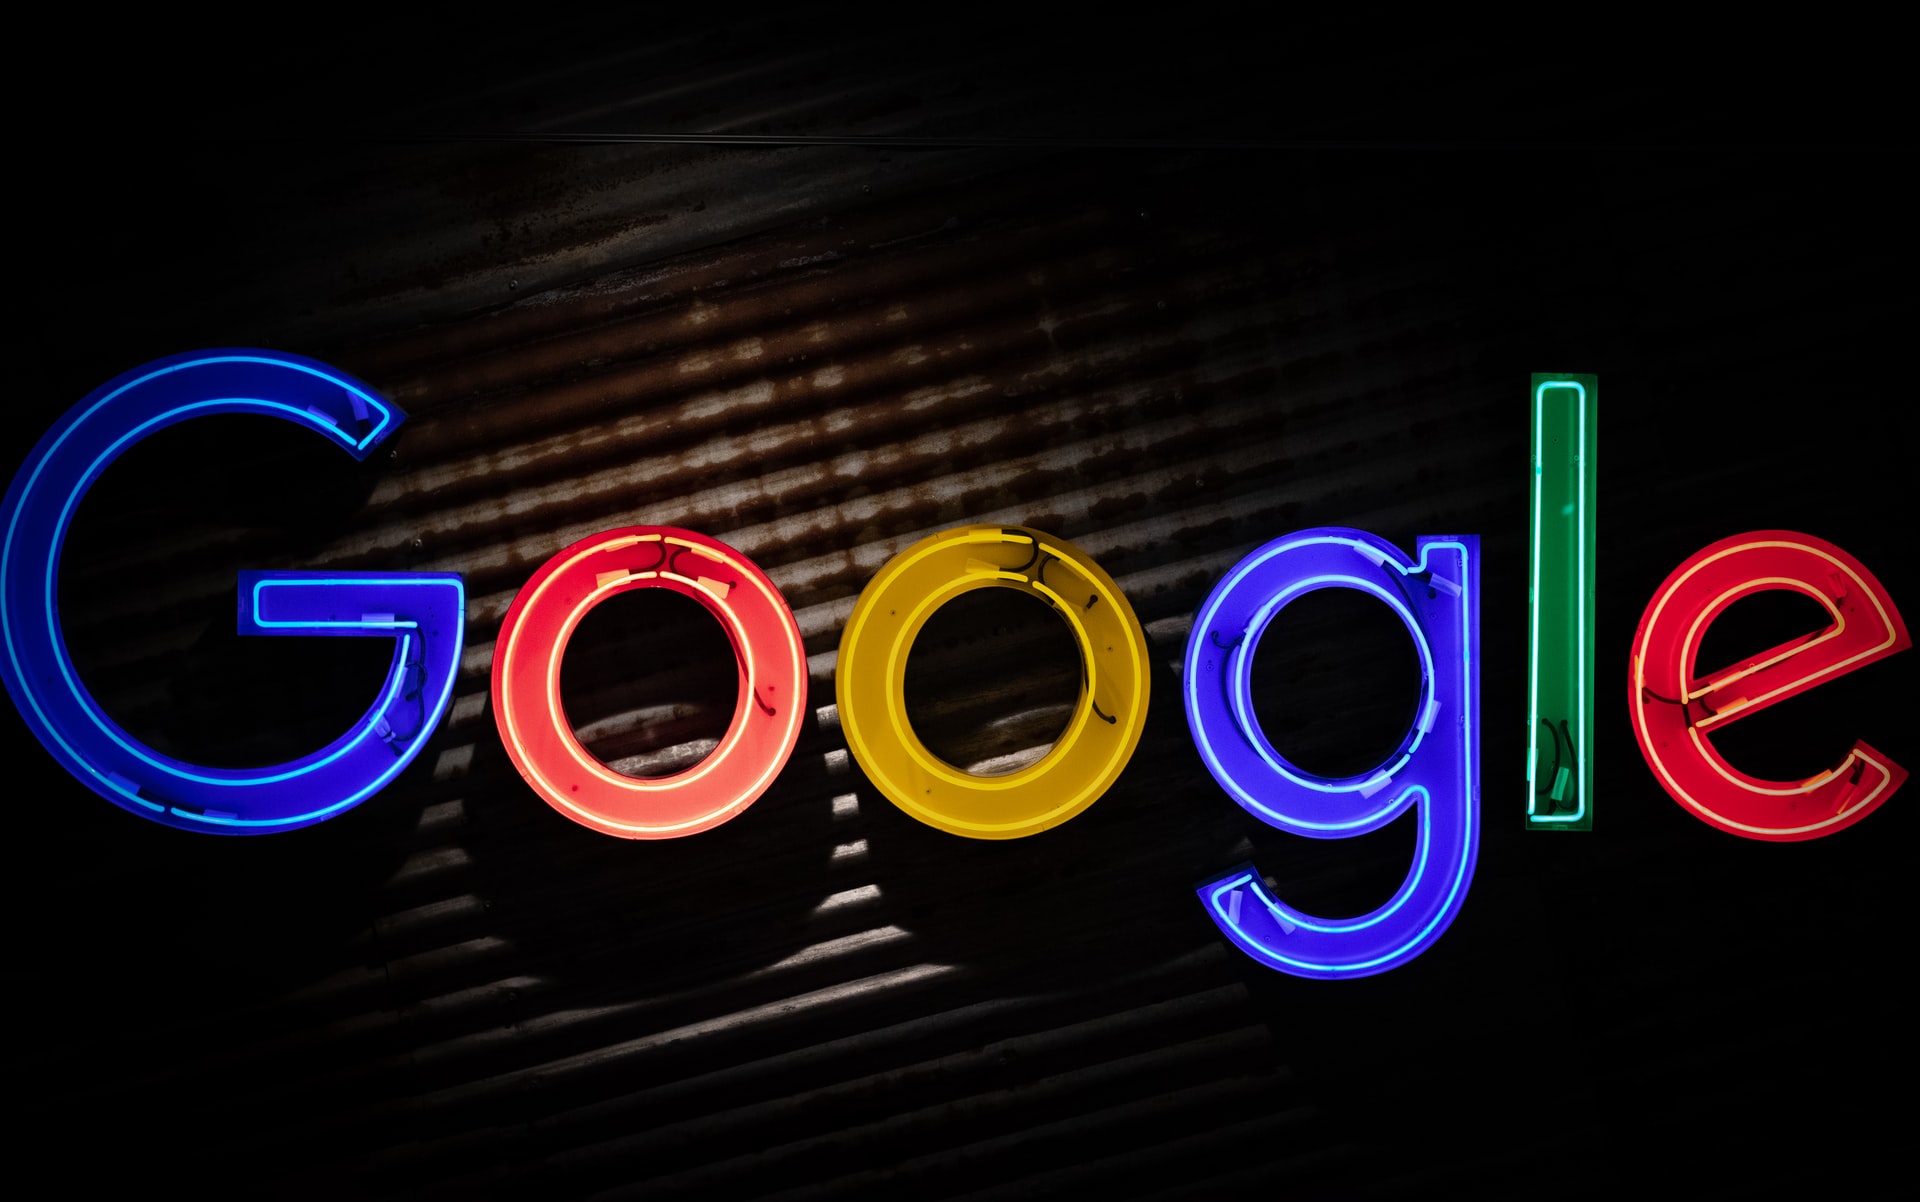 Ρωσικό δικαστήριο επέβαλλε πρόστιμο 47 εκατομμυρίων δολαρίων στην Google